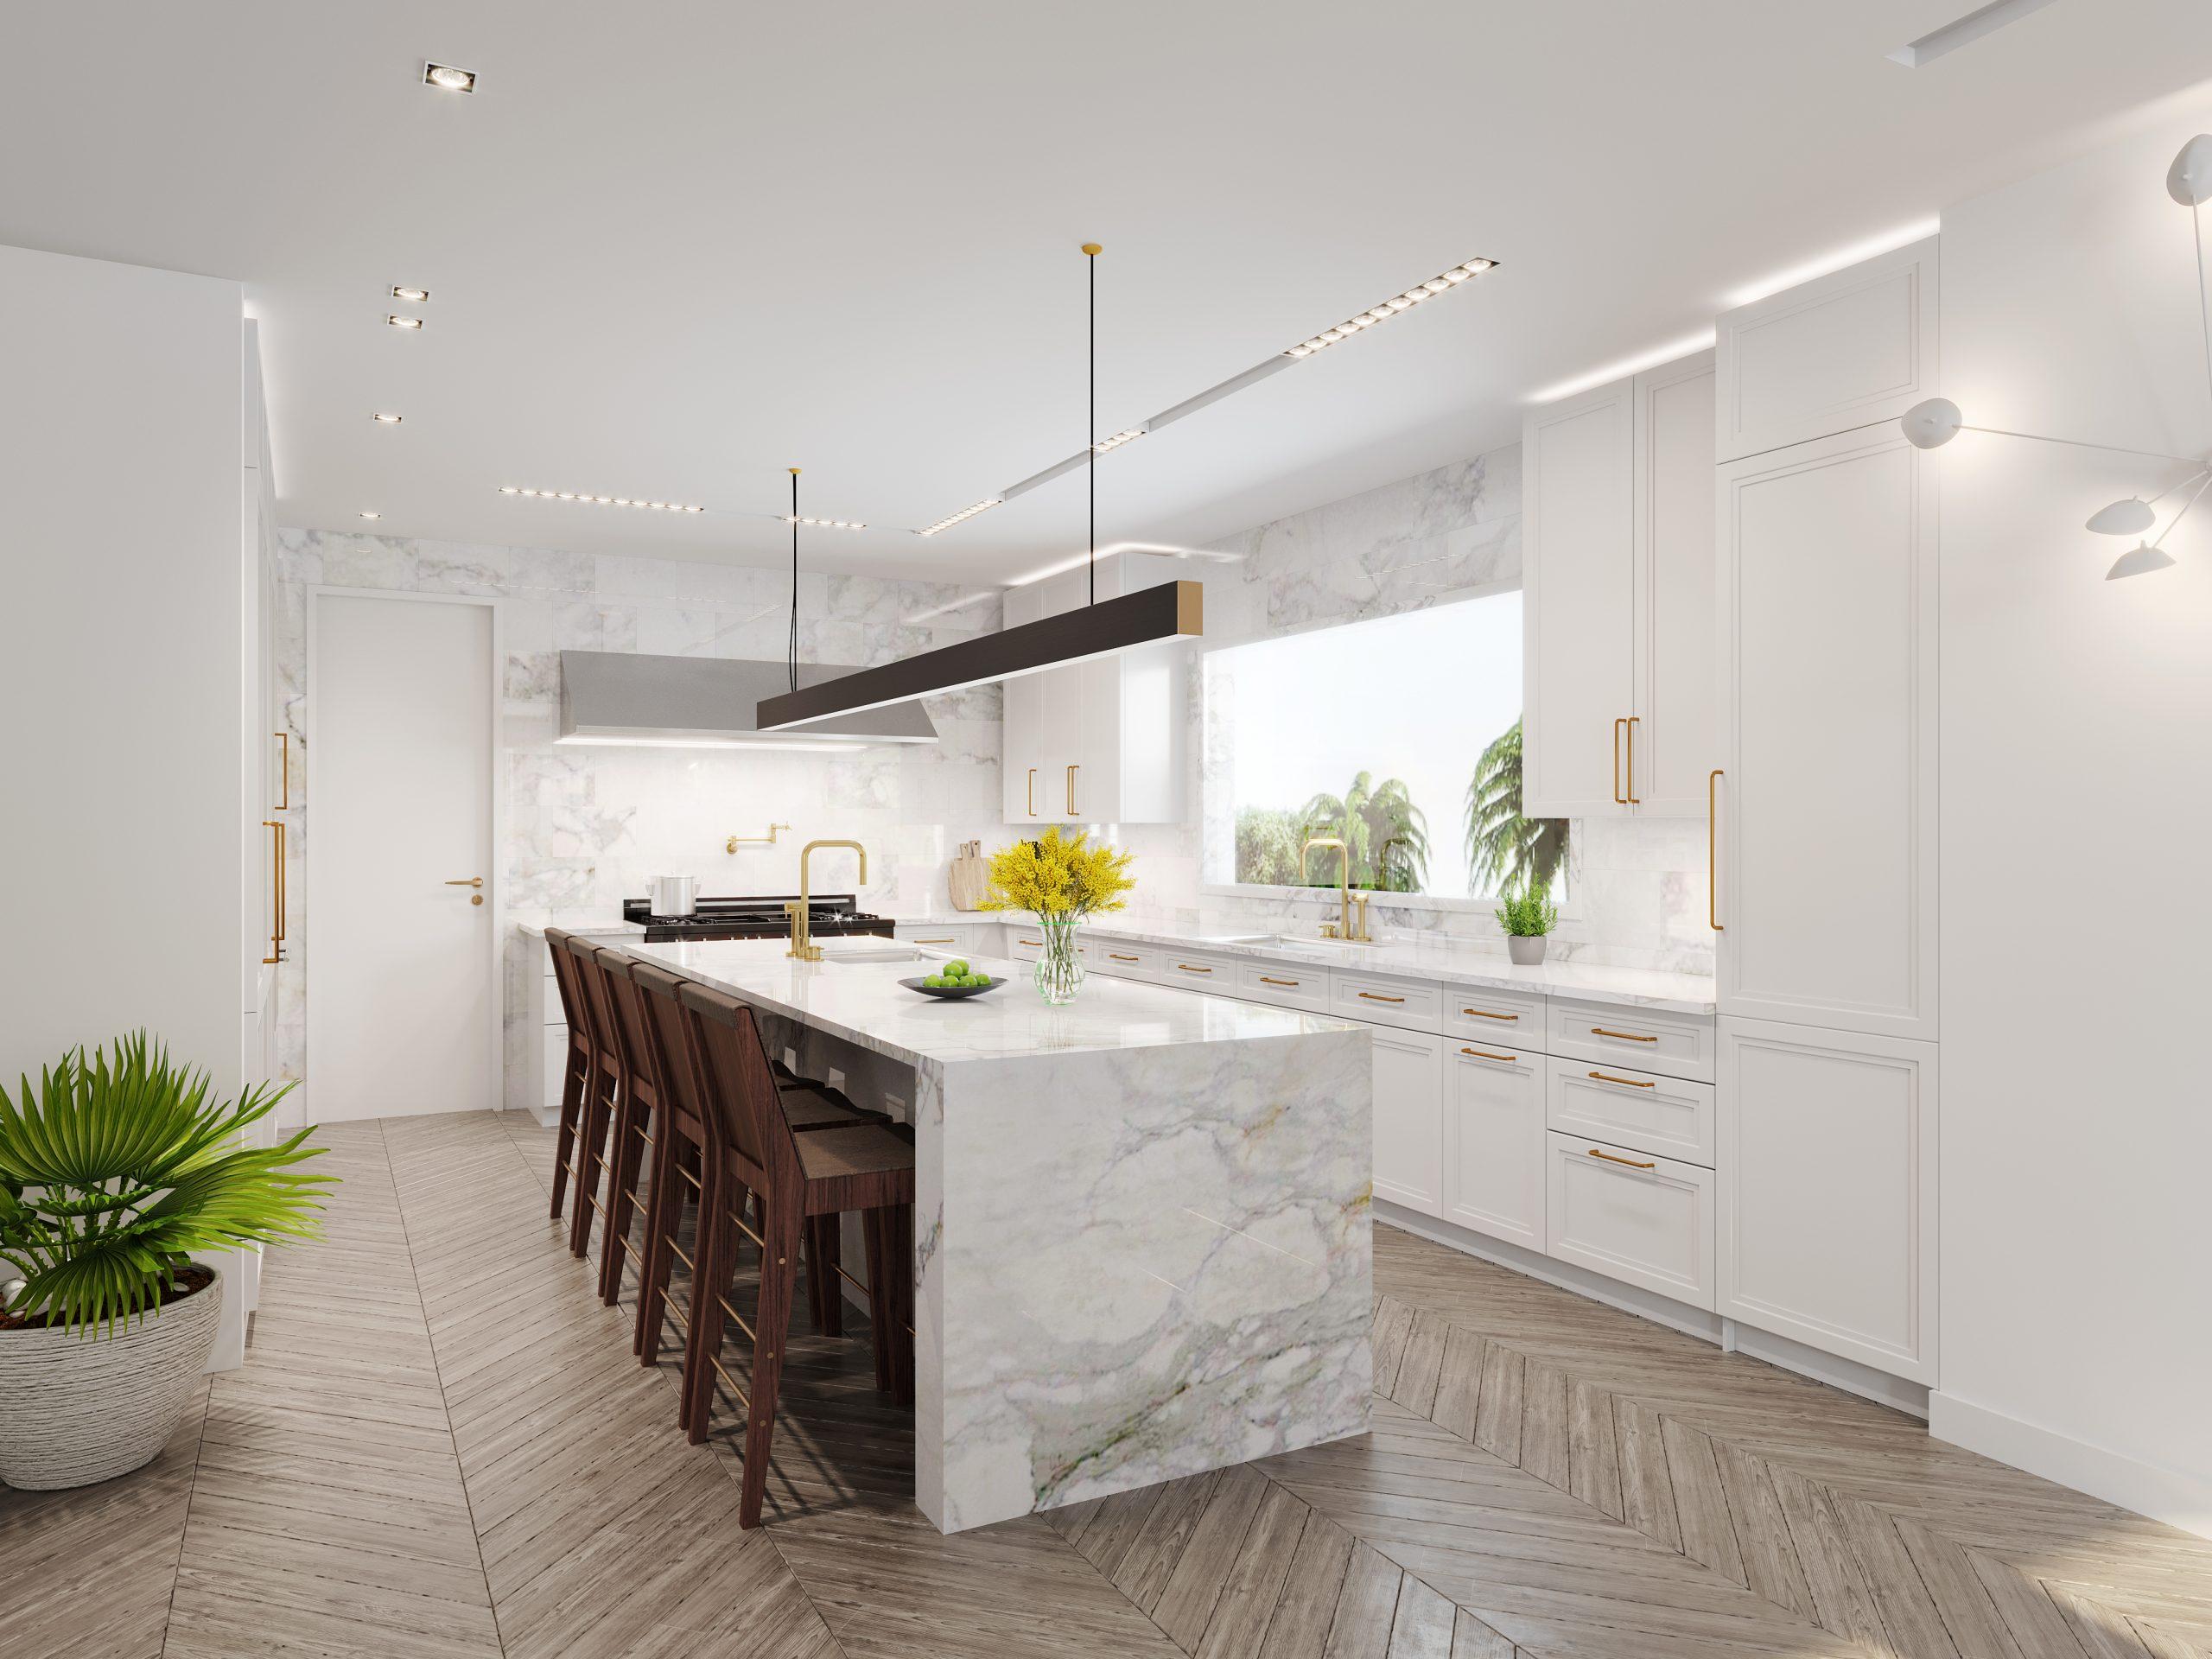 architectural-visualization-3d-rendering-services-interior-cgi-brett-reizen-residence-kitchen